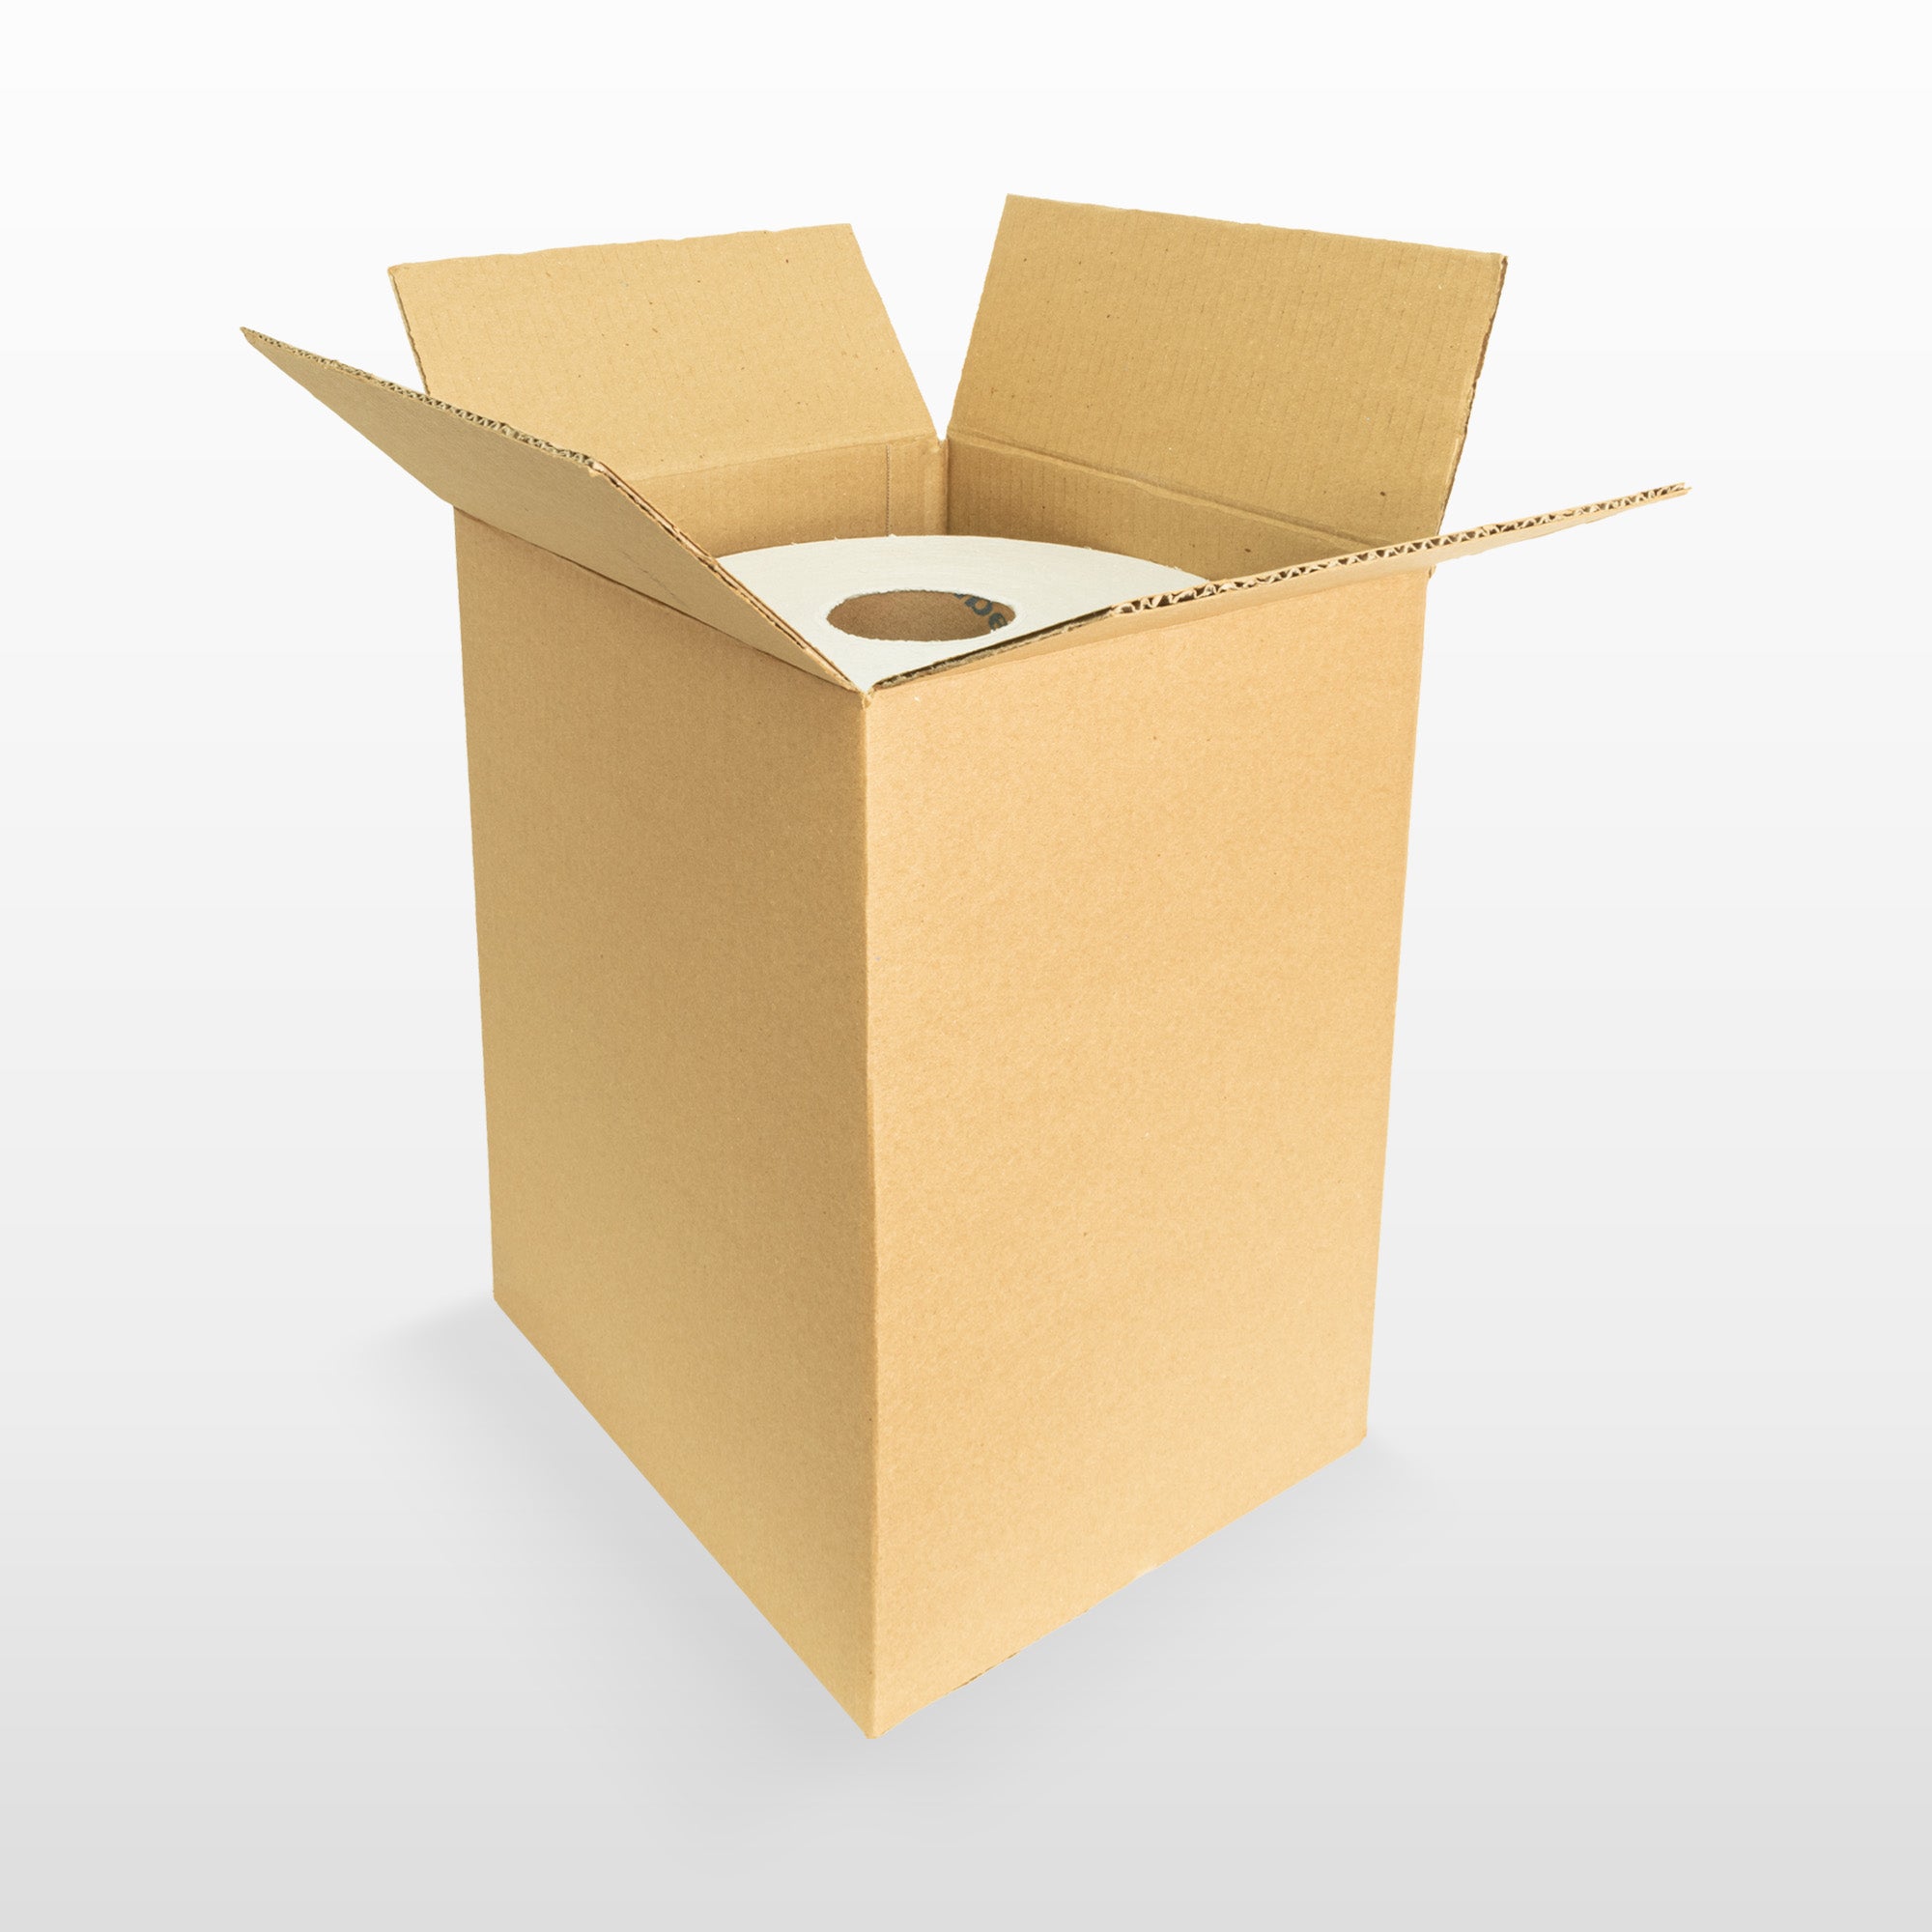 Cajas de cartón para envíos #21 – Packsys